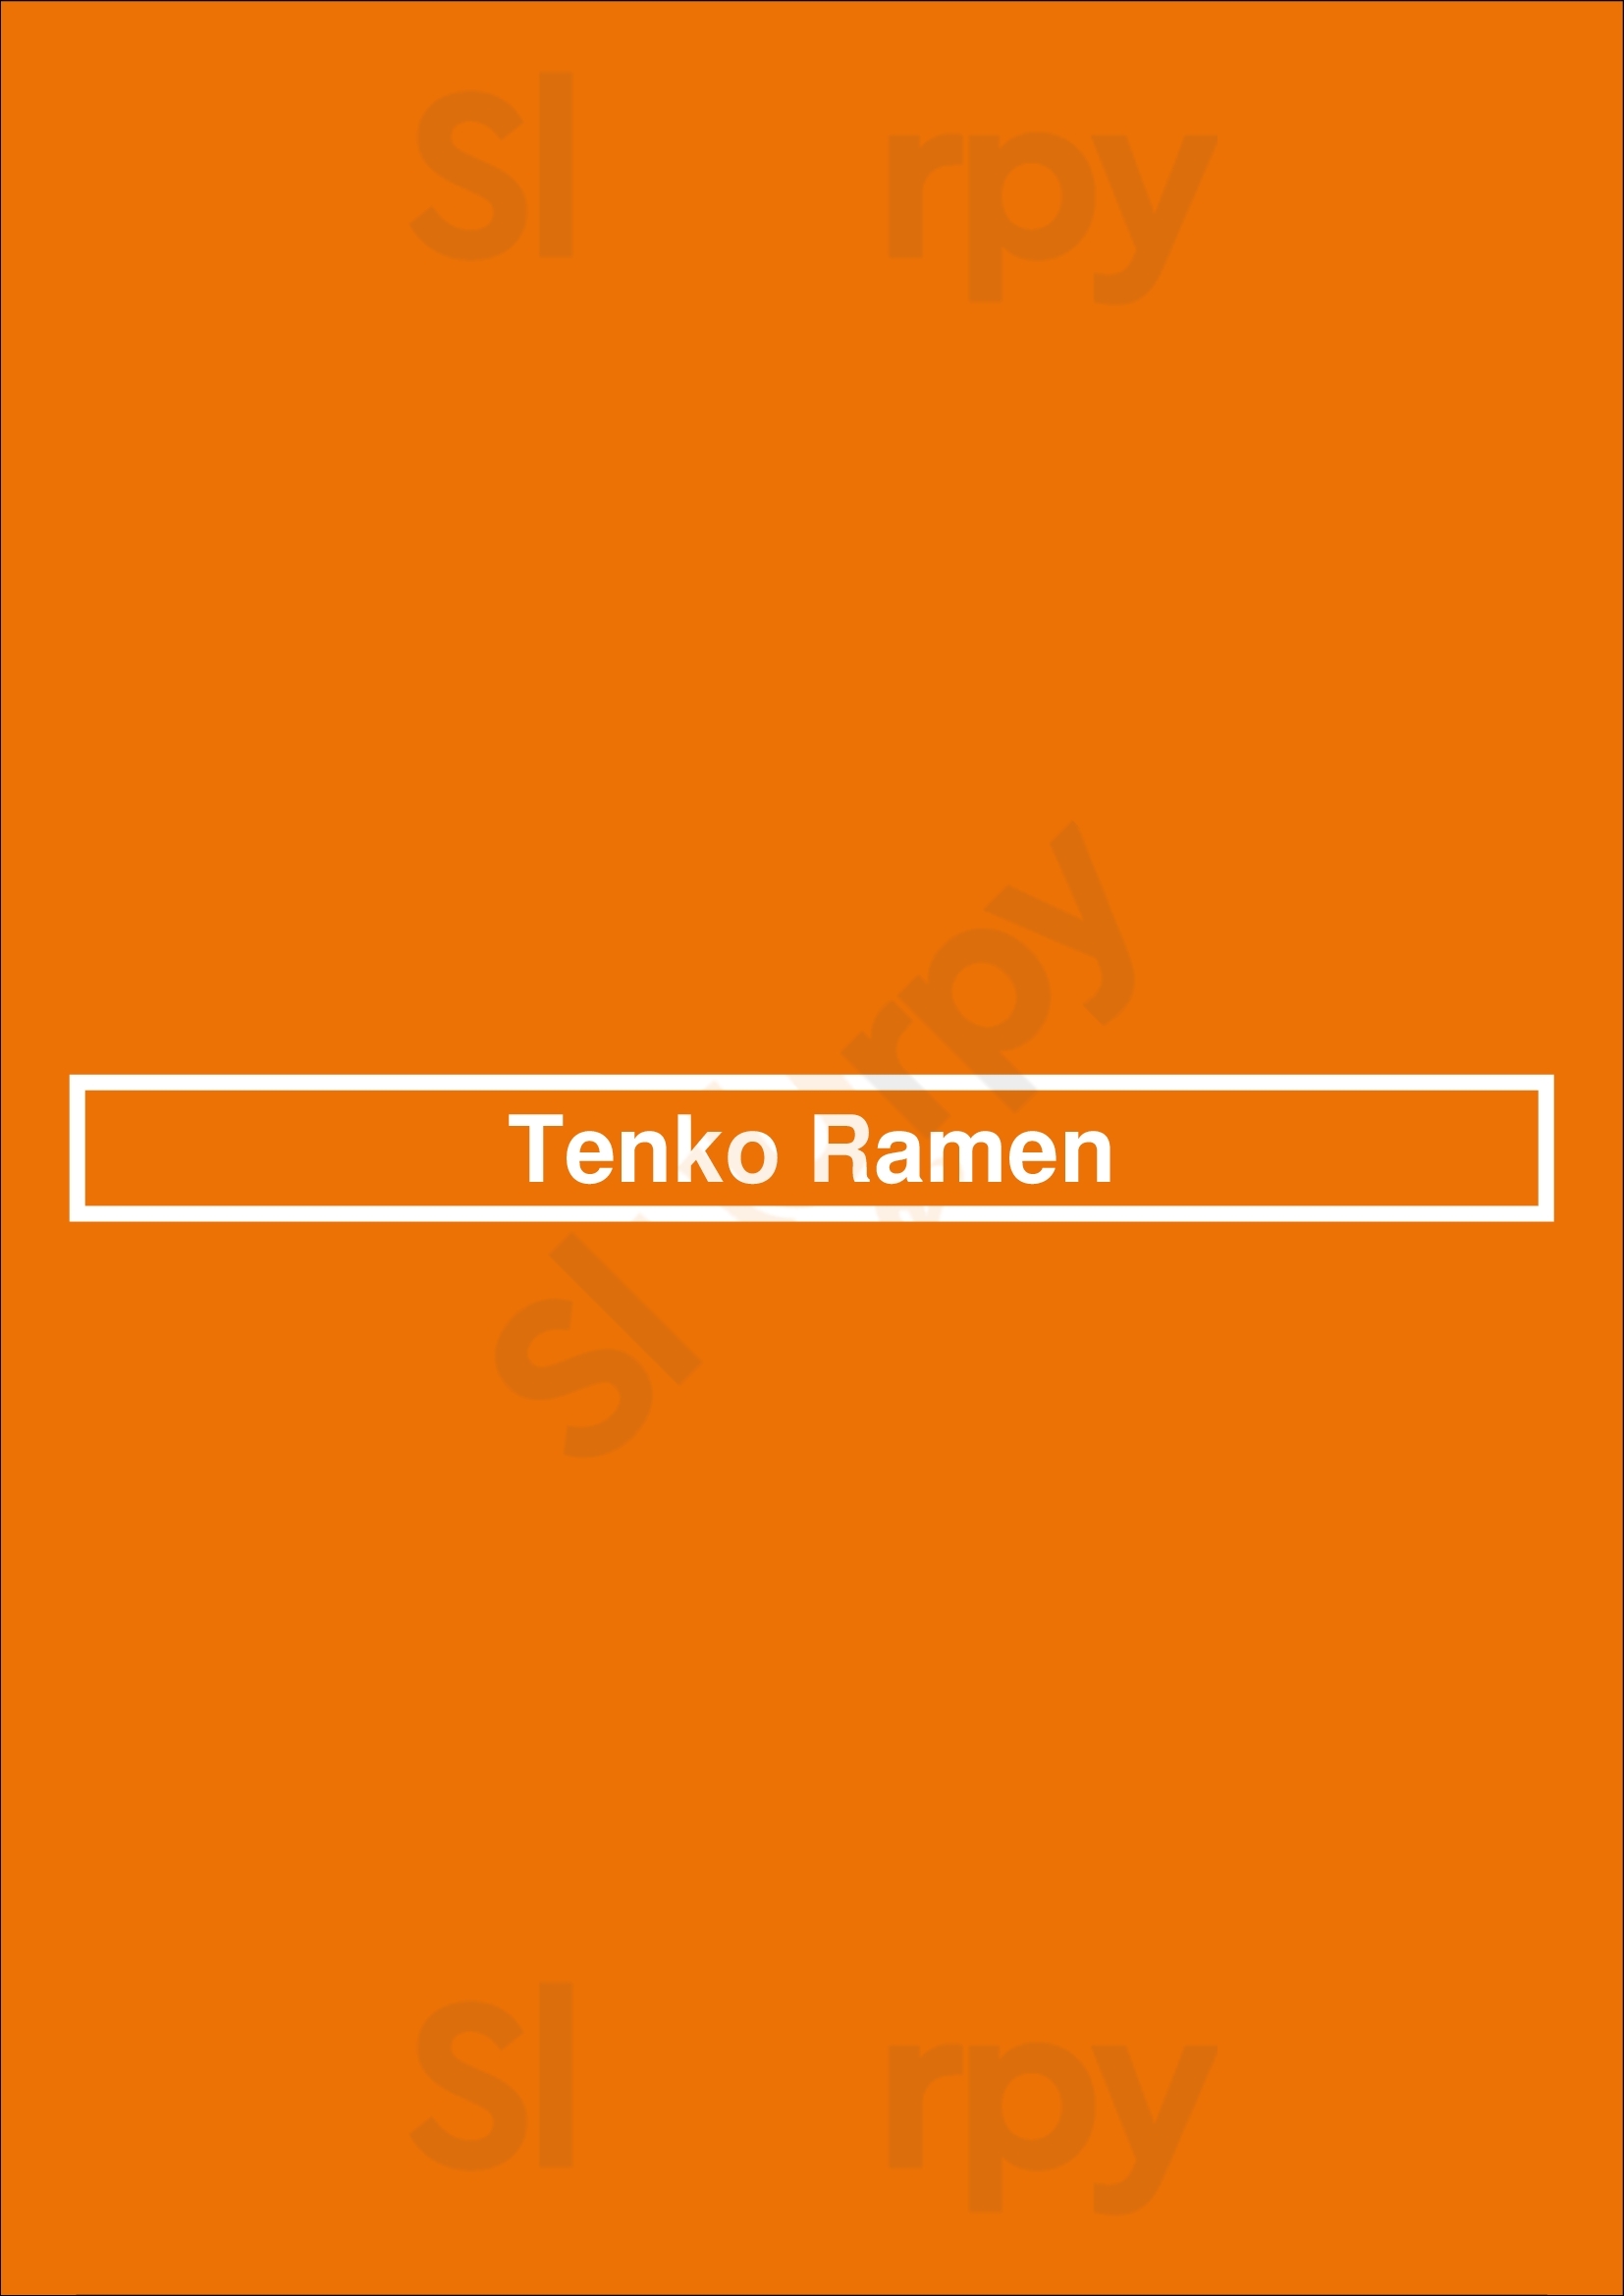 Tenko Ramen San Antonio Menu - 1